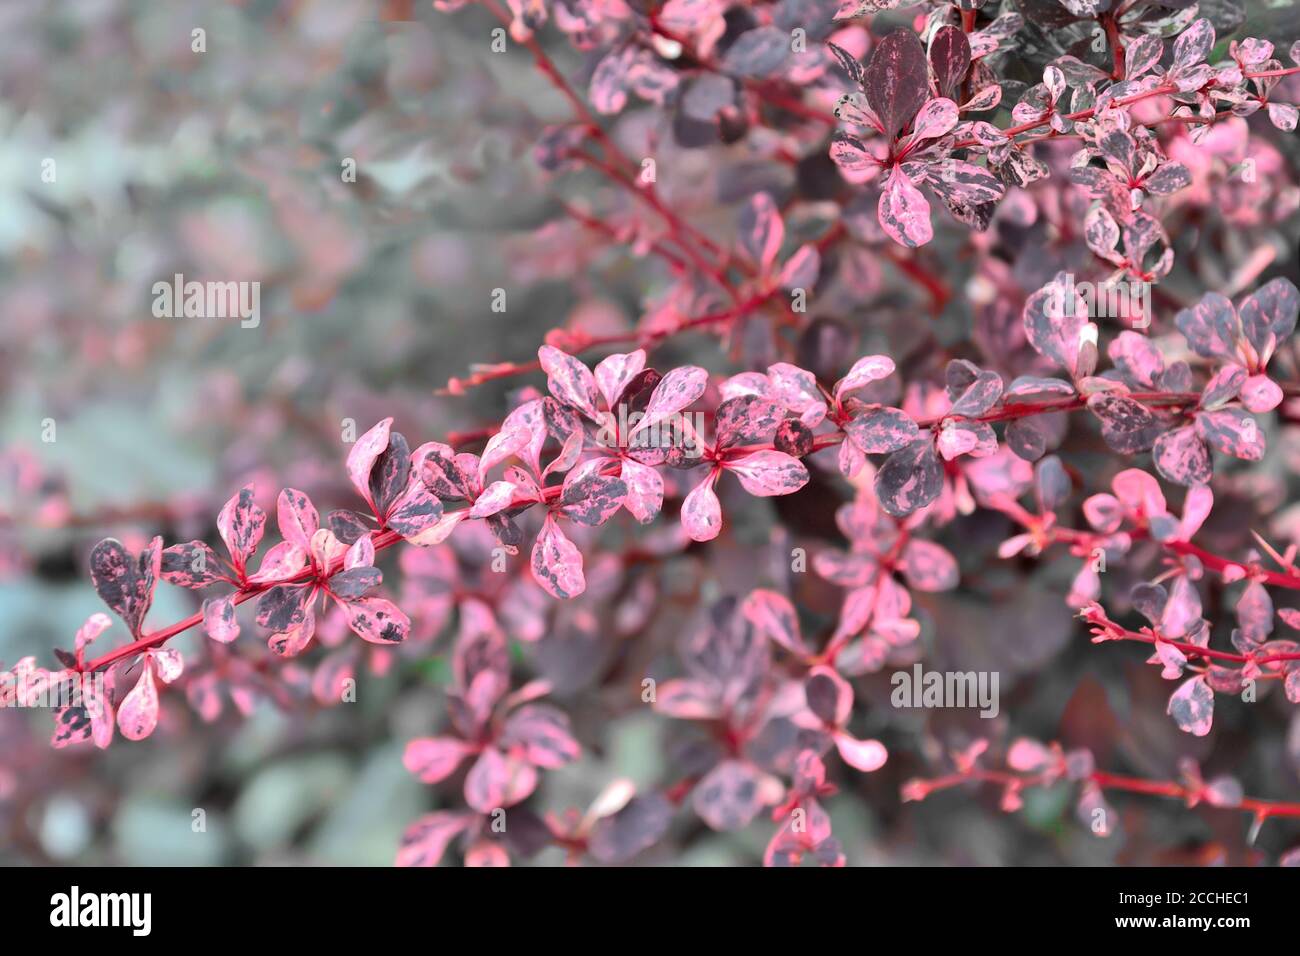 Feuilles pourpres roses variégées du cultivar Thunbergs (Berberis thunbergii 'Harlequin'). Arrière-plan flou , mise au point sélective. Jardinage ou lan Banque D'Images